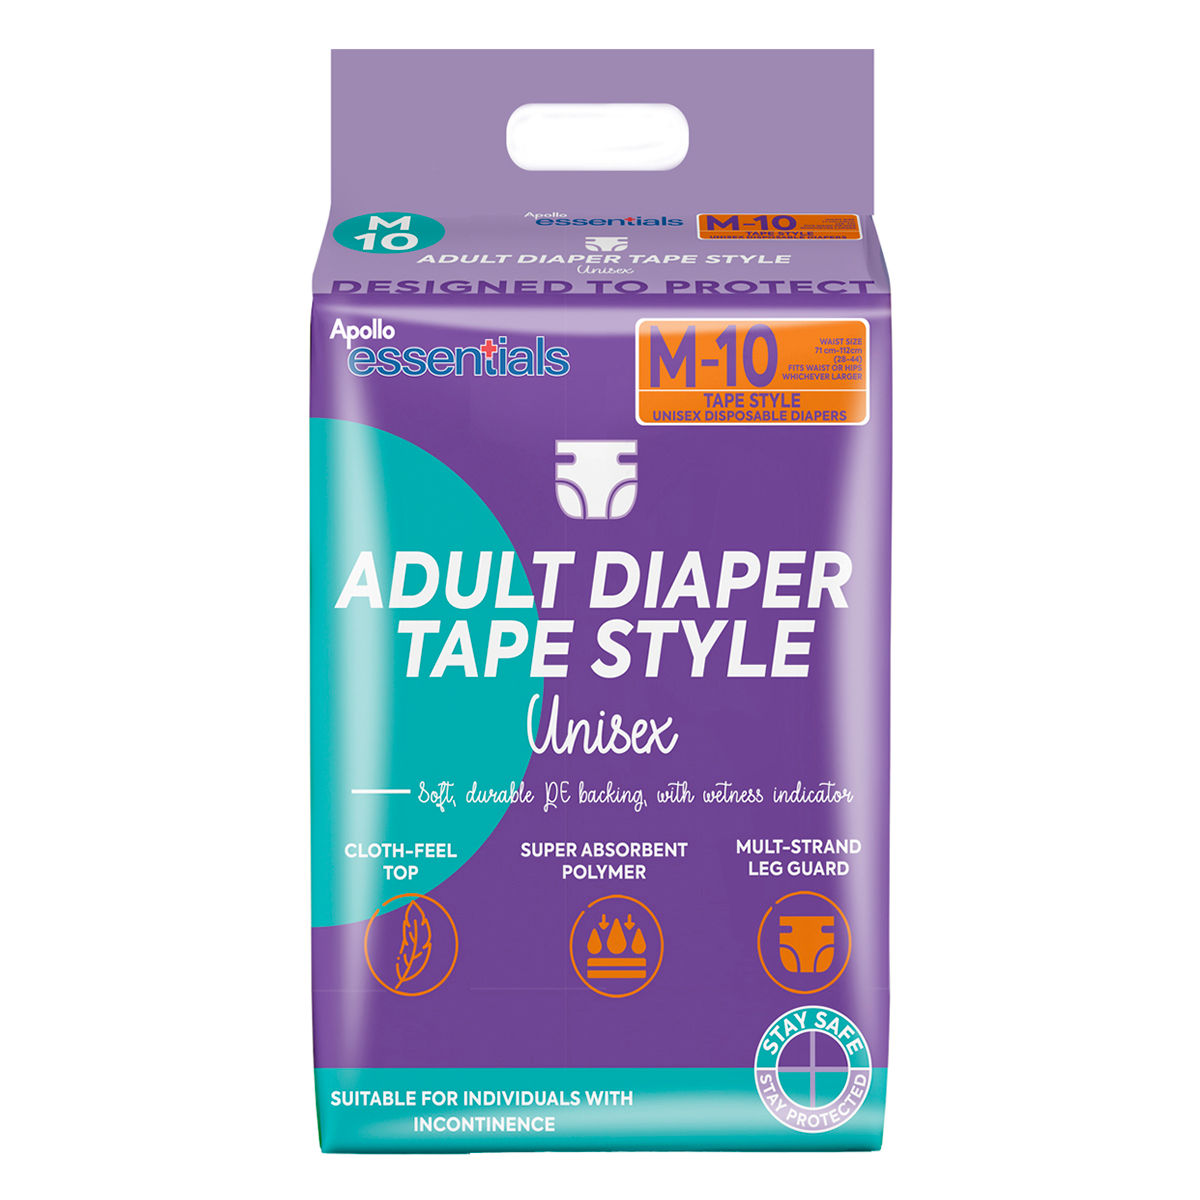 Apollo Essentials Adult Diaper Tape Unisex Medium, 10 Count, Pack of 1 